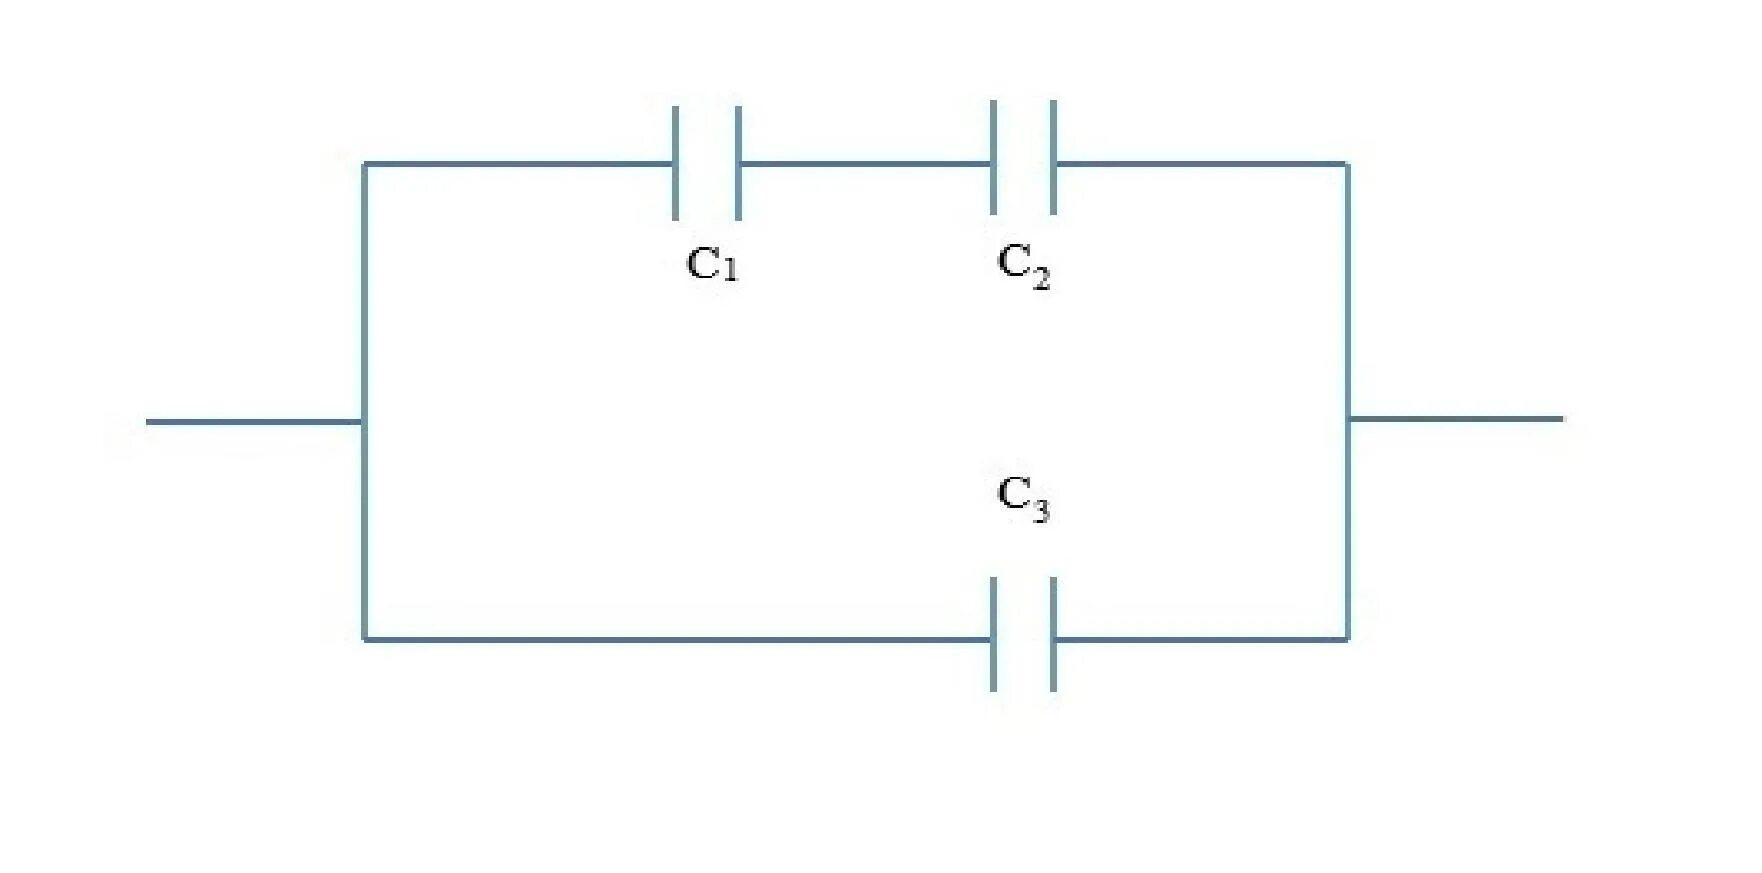 Емкость батареи конденсаторов равна с1+с2. Ёмкость батареи конденсаторов равна 5.8МКФ. Ёмкость батареи конденсаторов 4мкф. Схема емкостной АКБ. Четыре одинаковые емкости